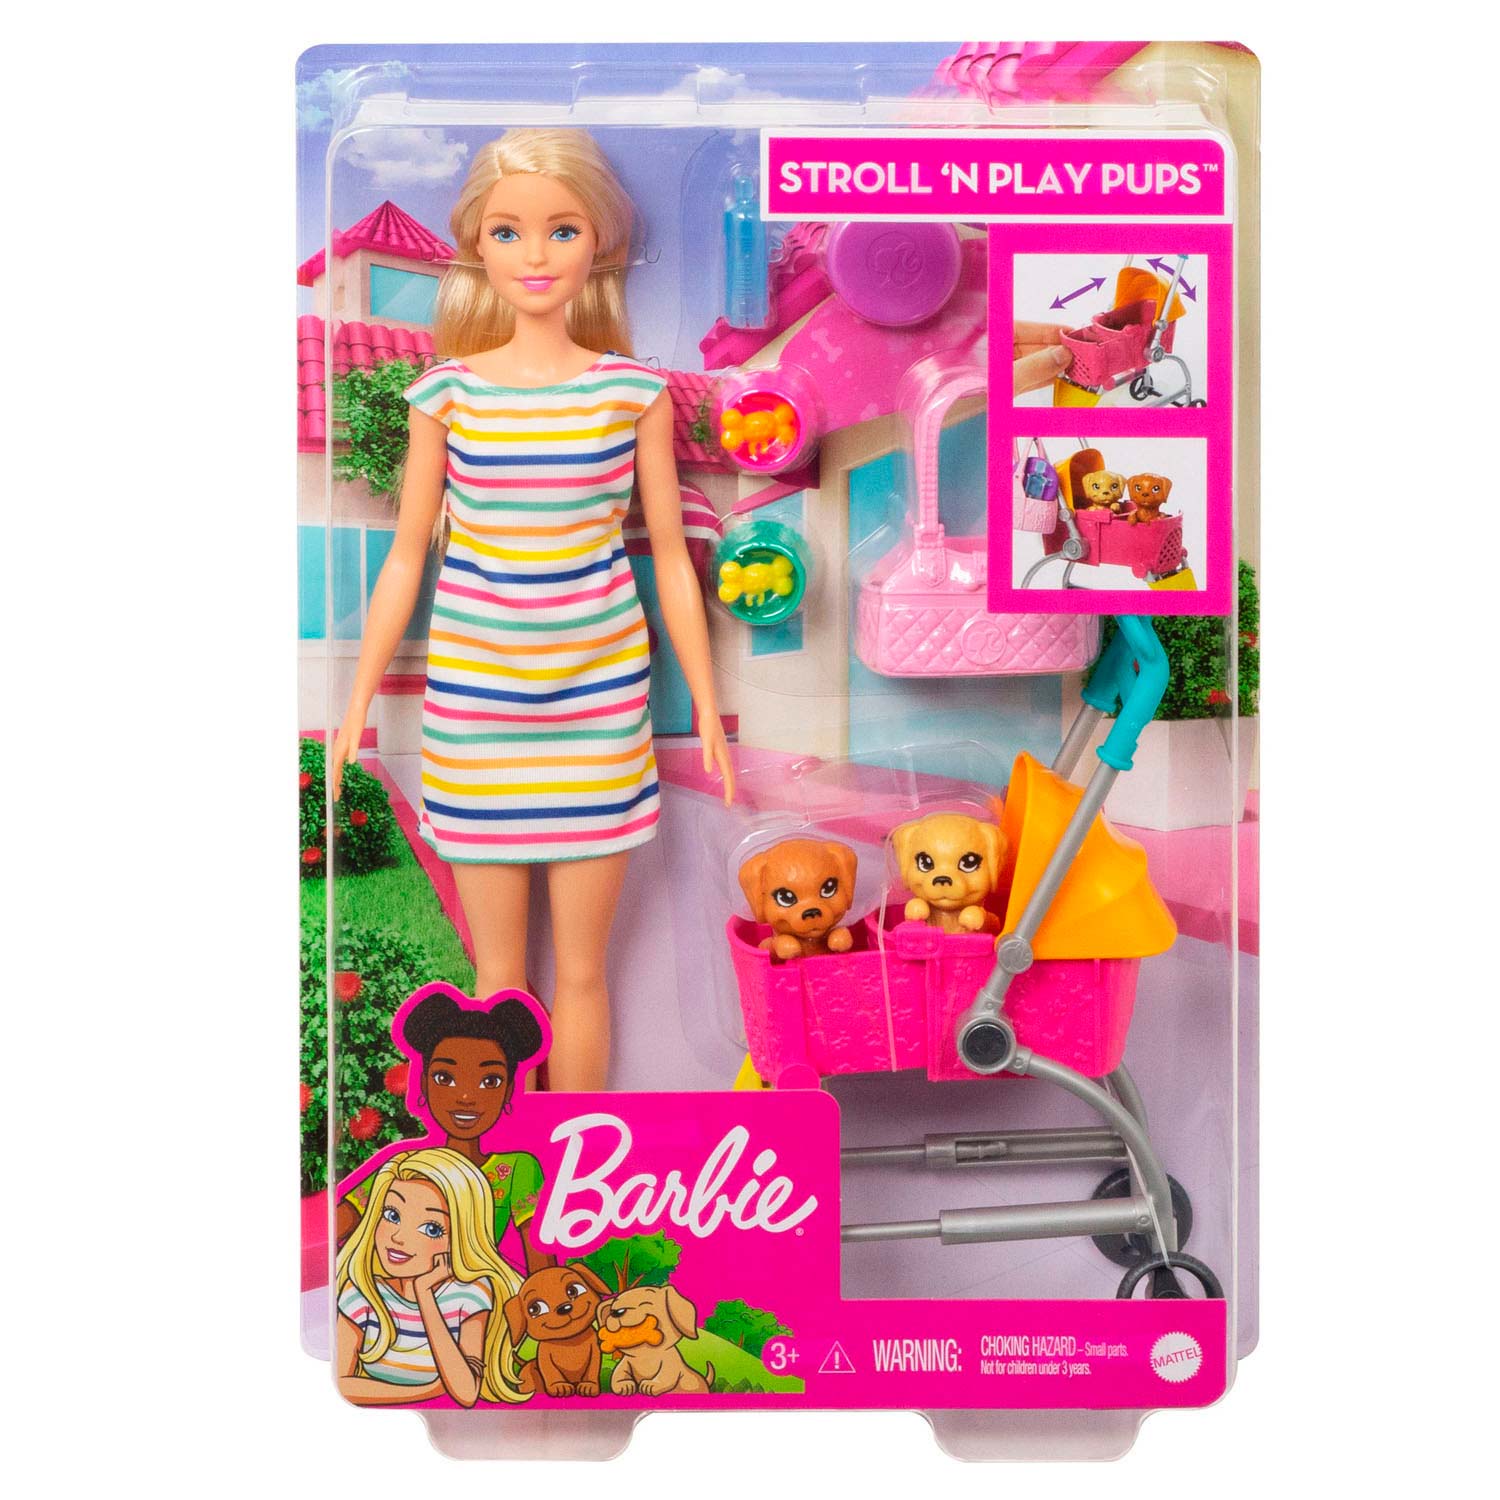 Barbie Pop Loop en Speel Pup - Blond Haar